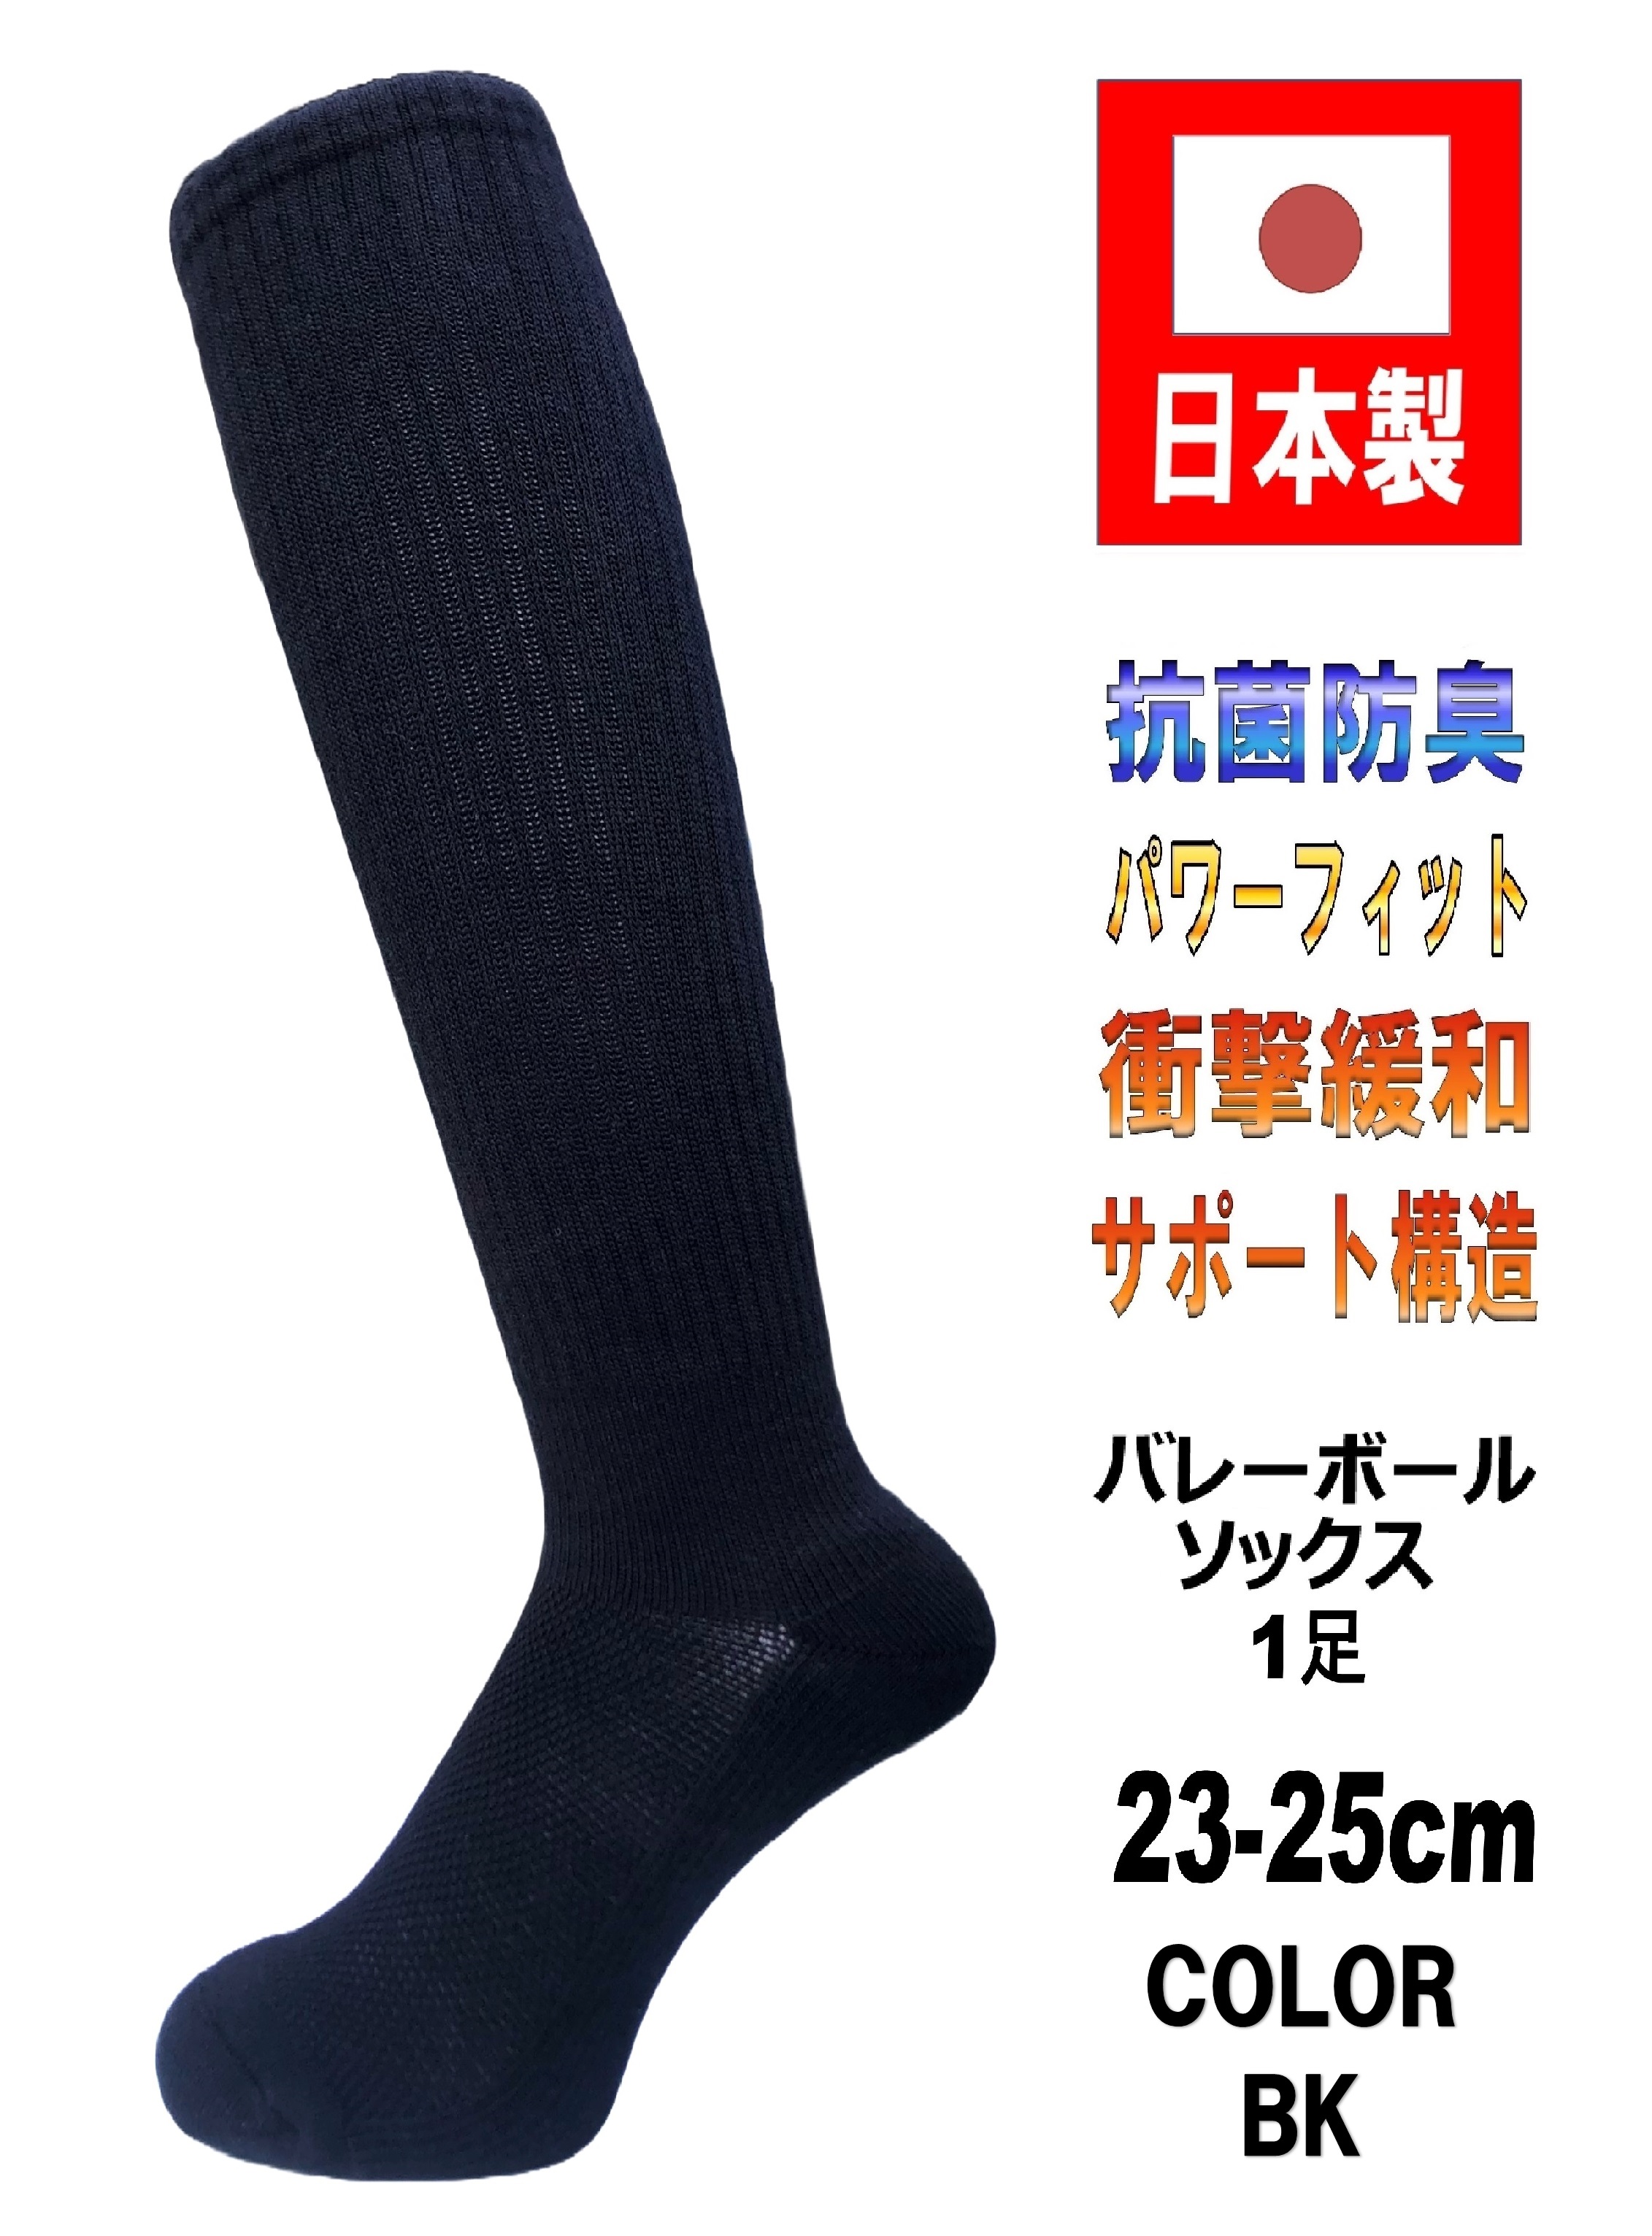 日本製 バレーボールソックス 23-25cm 抗菌防臭機能付 5カラー